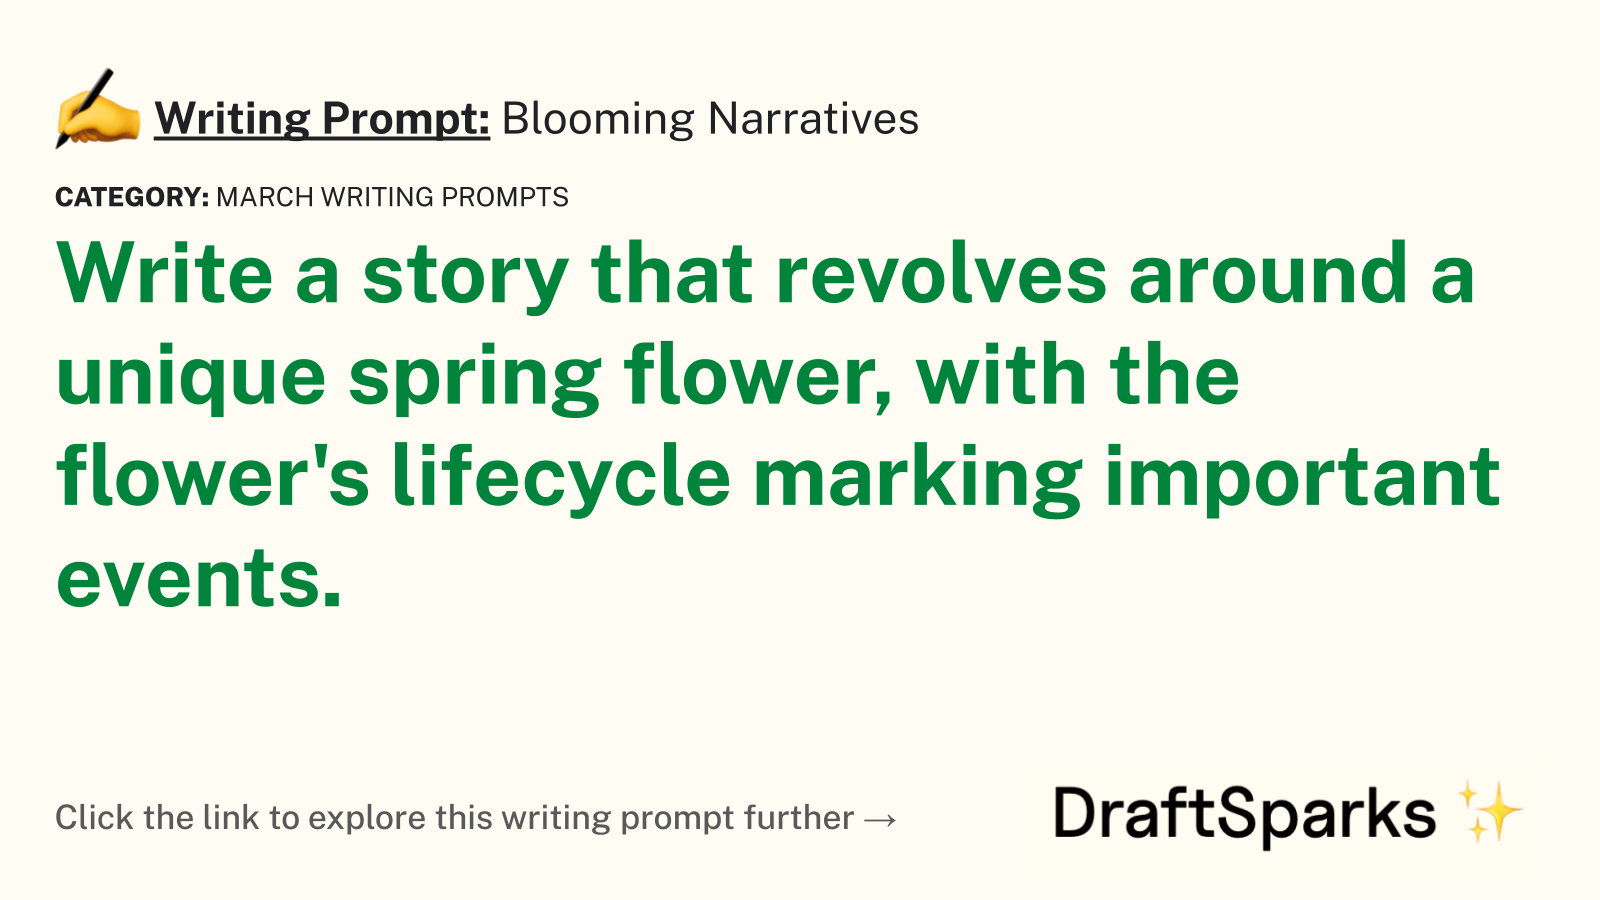 Blooming Narratives